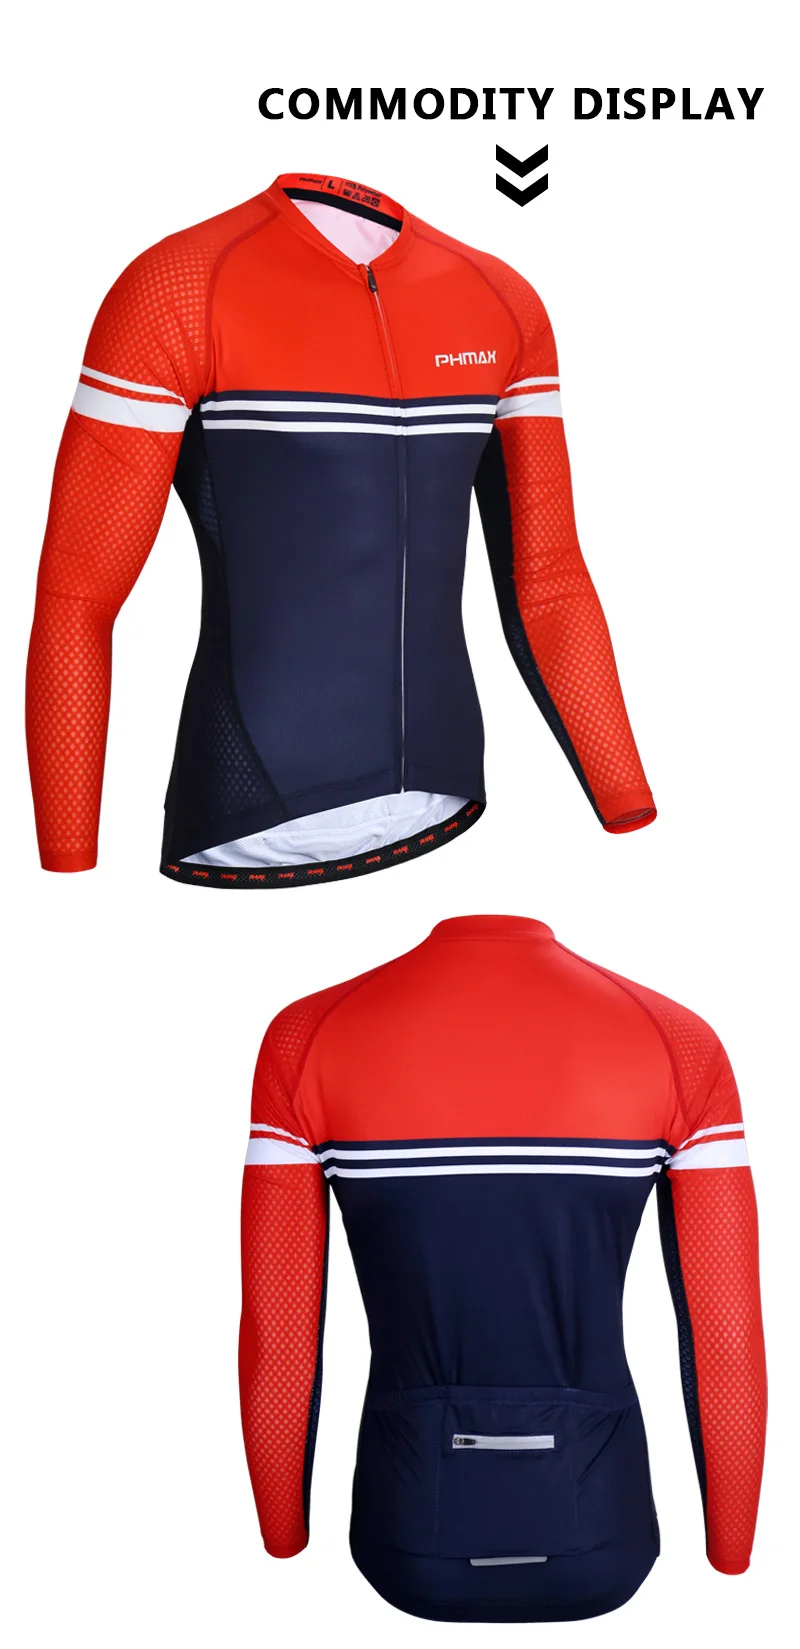 PHMAX Pro Анти-УФ майки для велоспорта дышащий с длинным рукавом Одежда для велоспорта Осенняя Спортивная одежда для езды на горном велосипеде